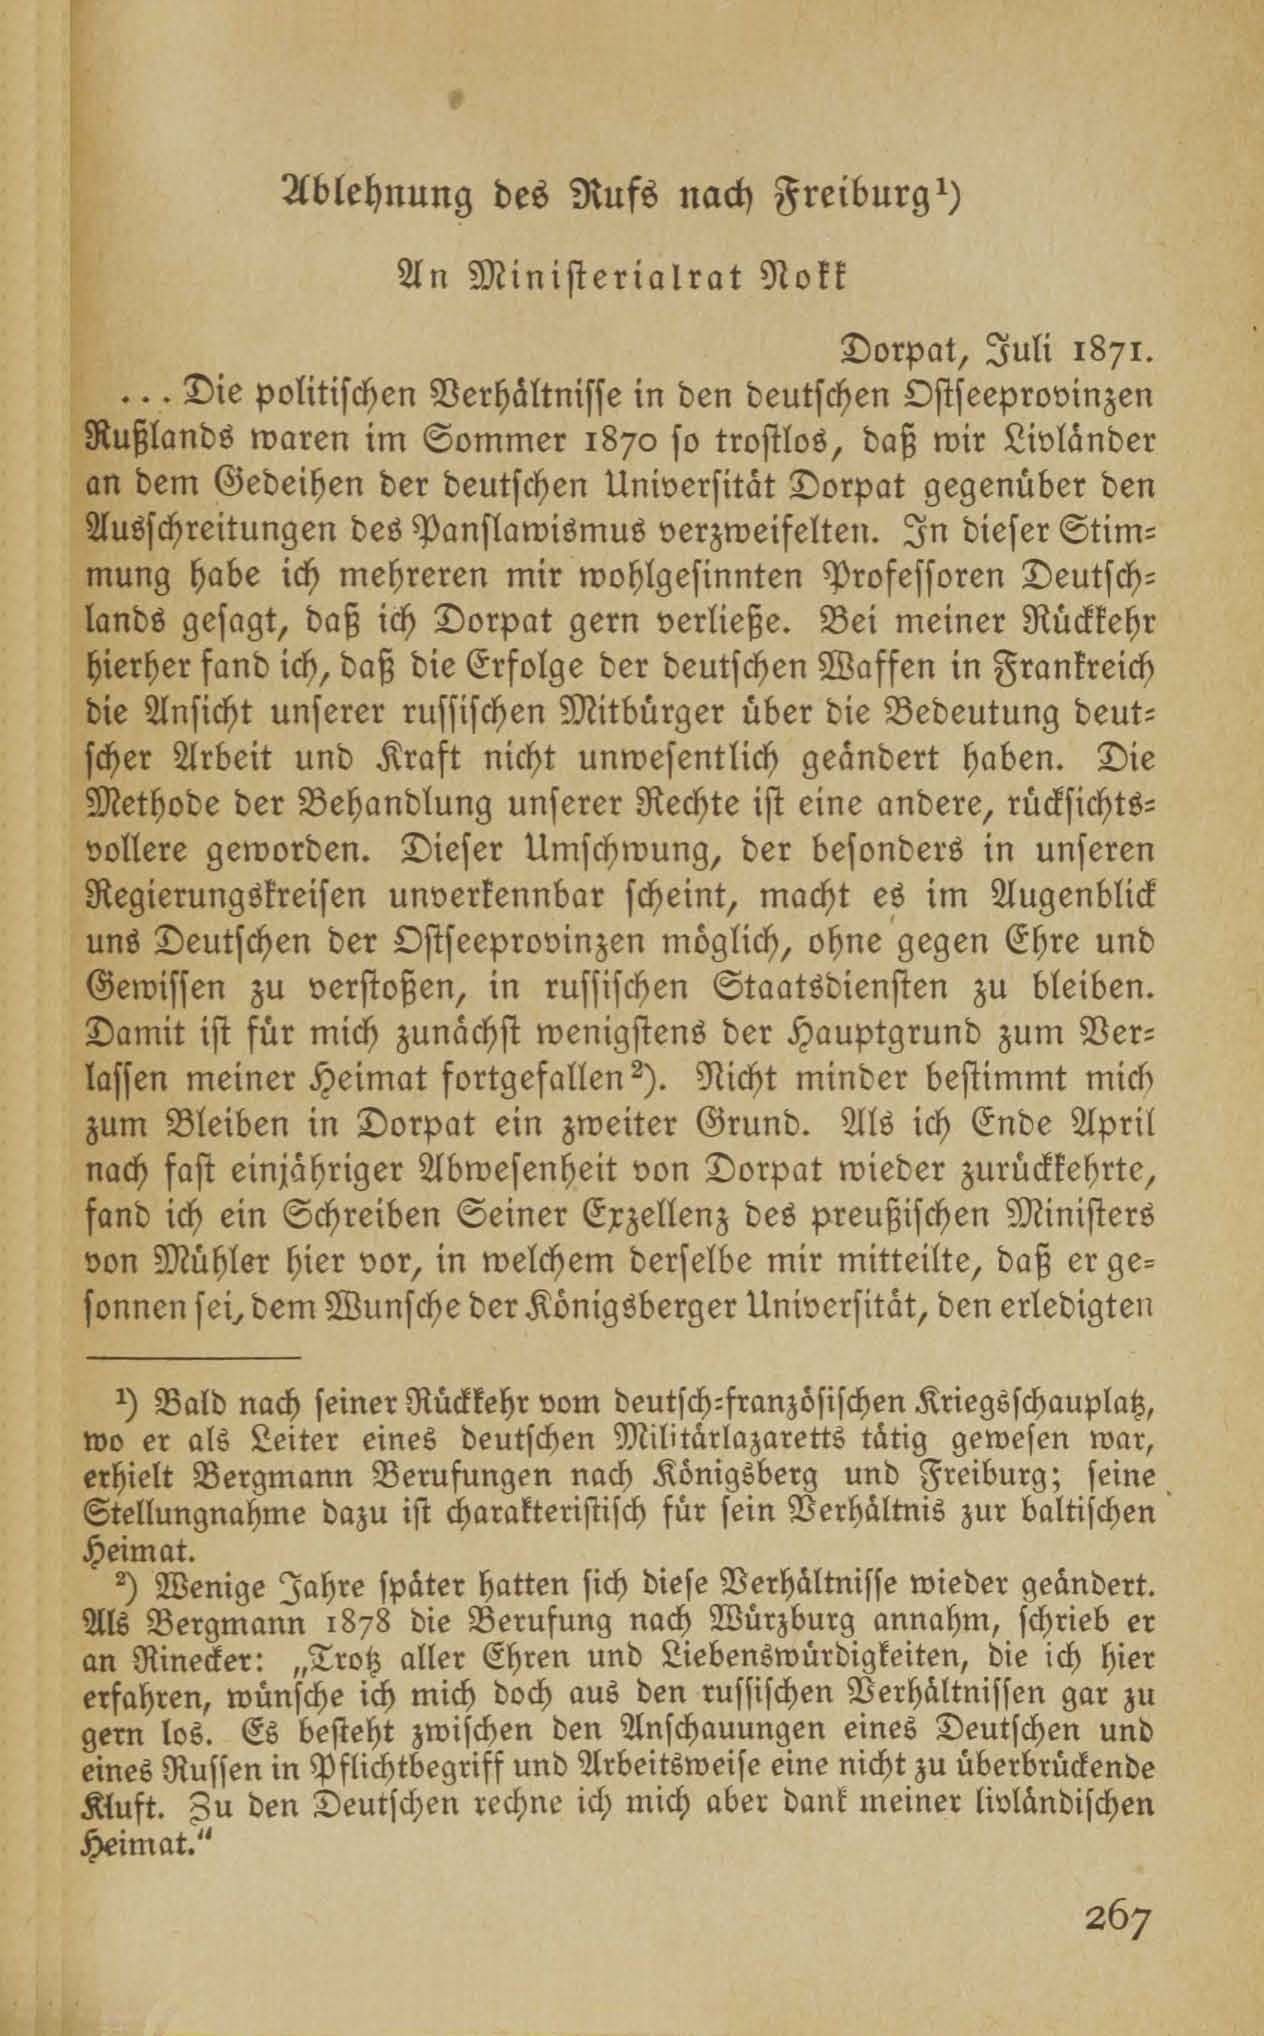 Ablehnung des Rufs nach Freiburg (1917 ?) | 1. (267) Haupttext